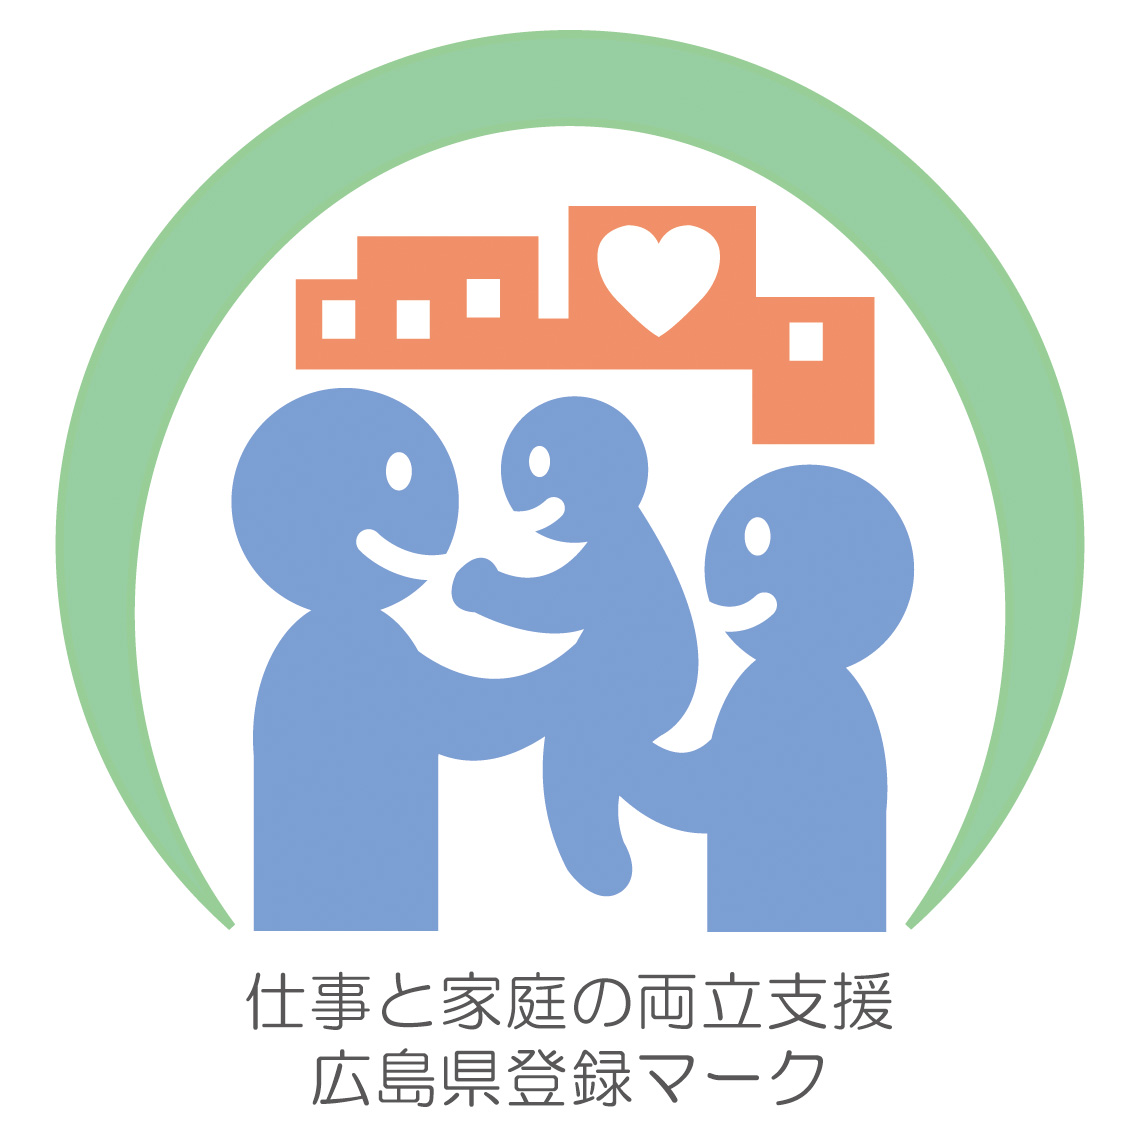 私たちは広島県仕事と家庭の両立支援宣言企業です。